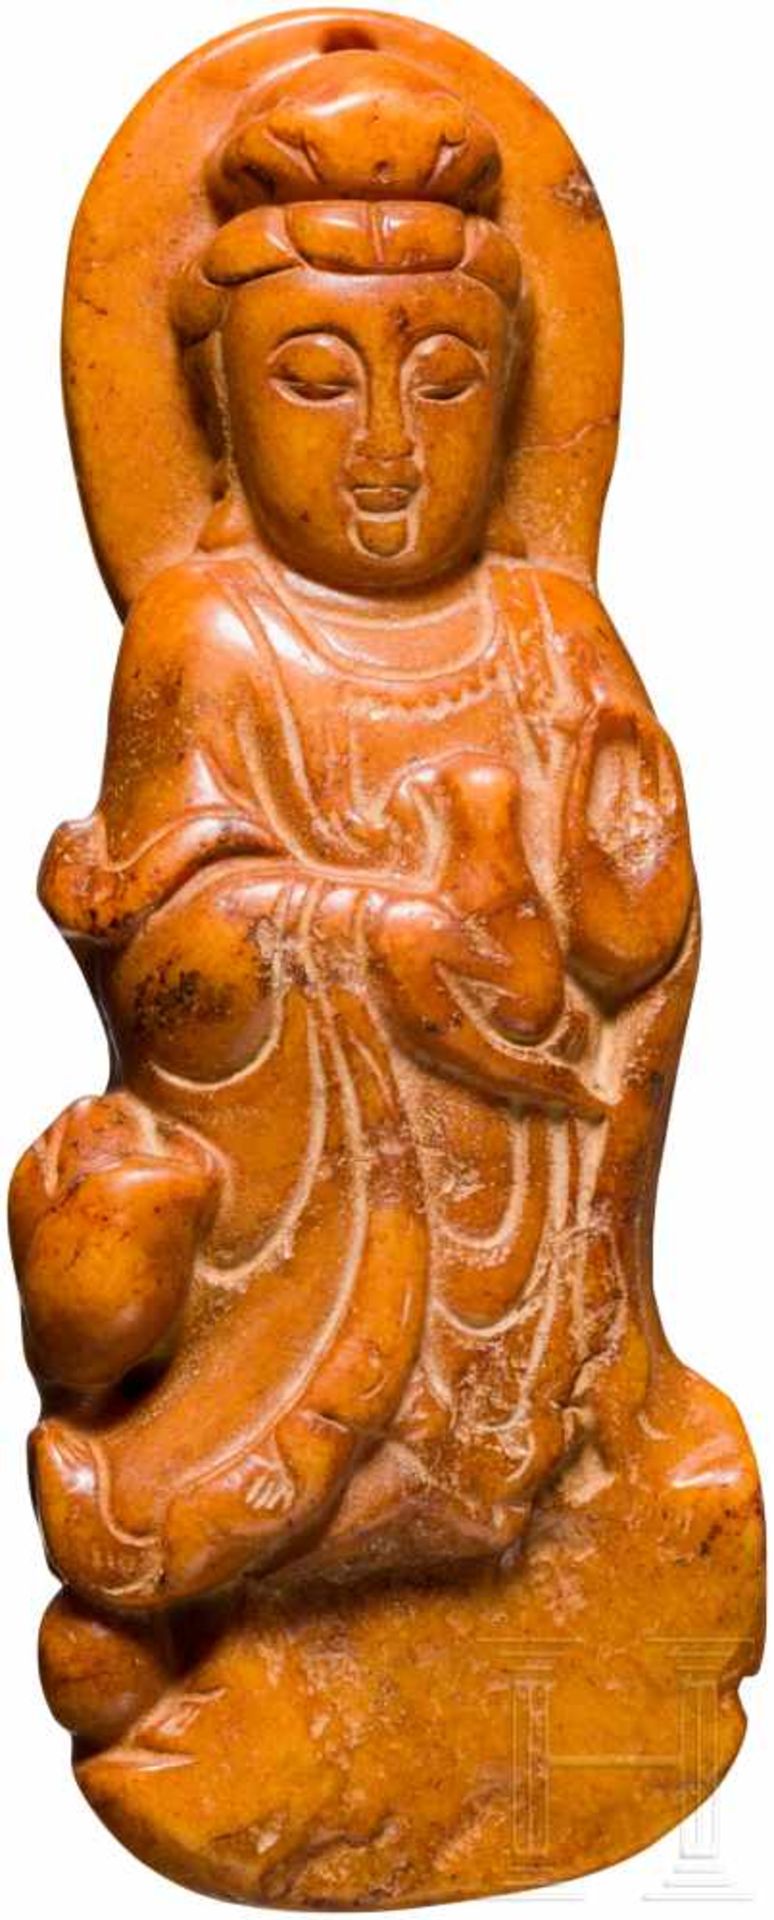 Guanyin-Anhänger aus Jade, China, Ming-DynastieGeschnittene Figur aus gelblich-bräunlicher Jade.